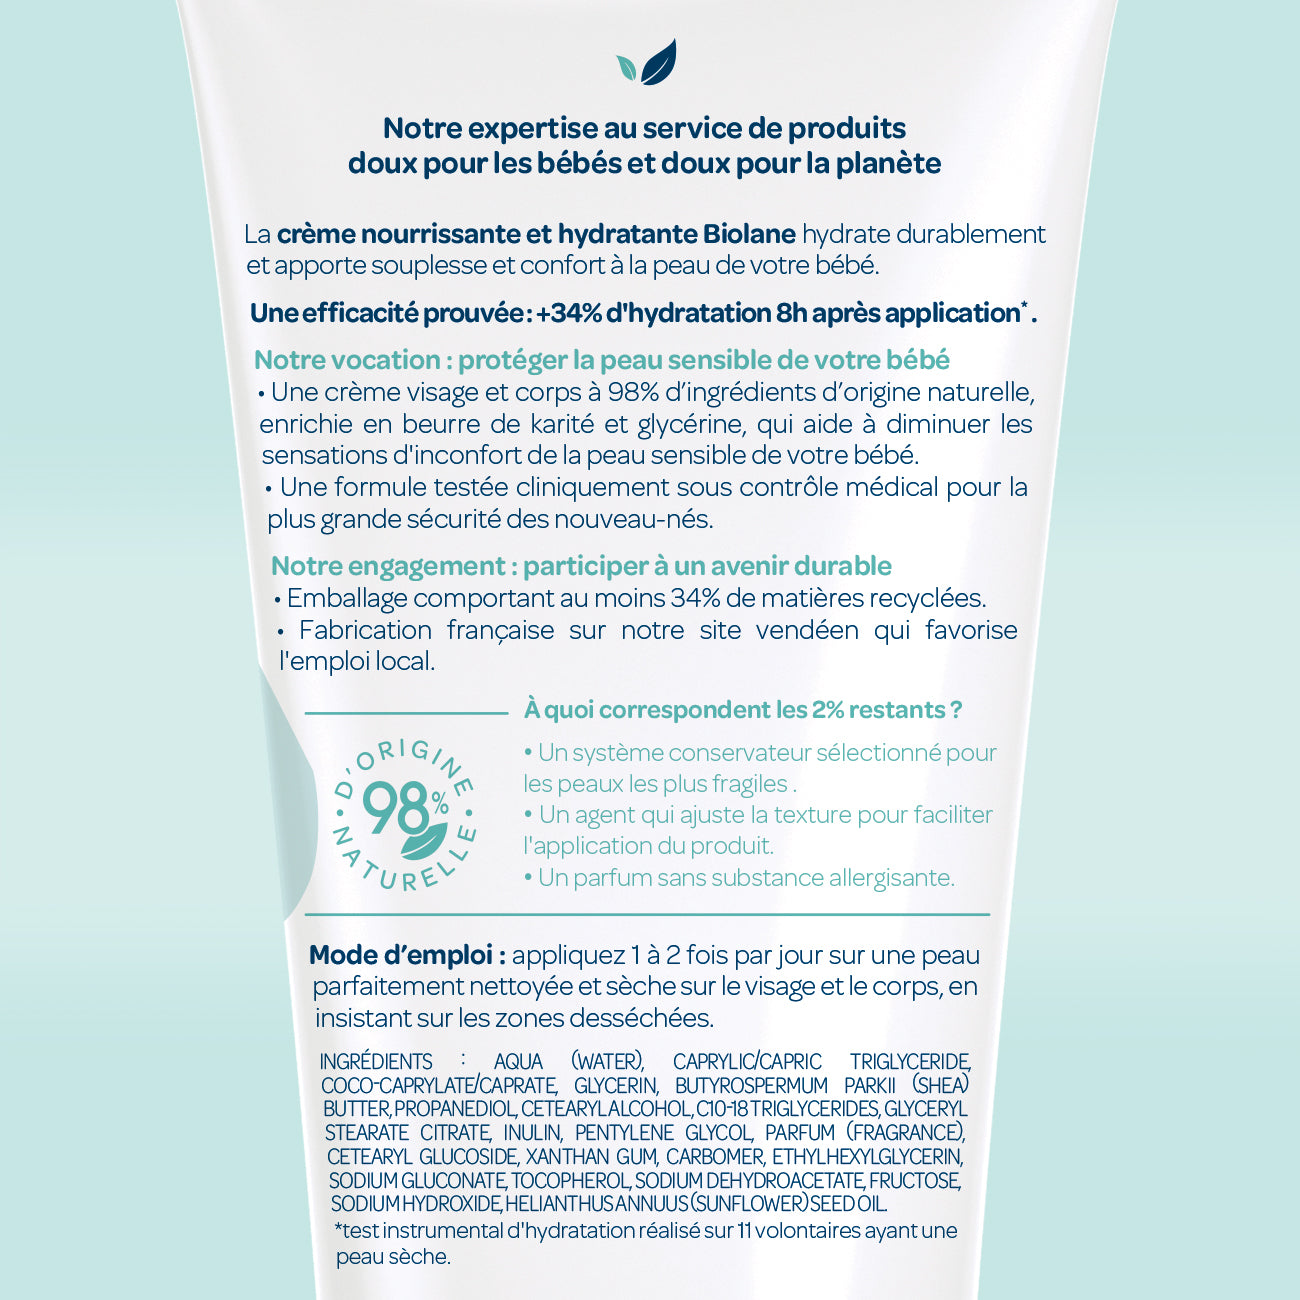 Crème hydratante : bien hydrater bébé l'hiver - BIOLANE